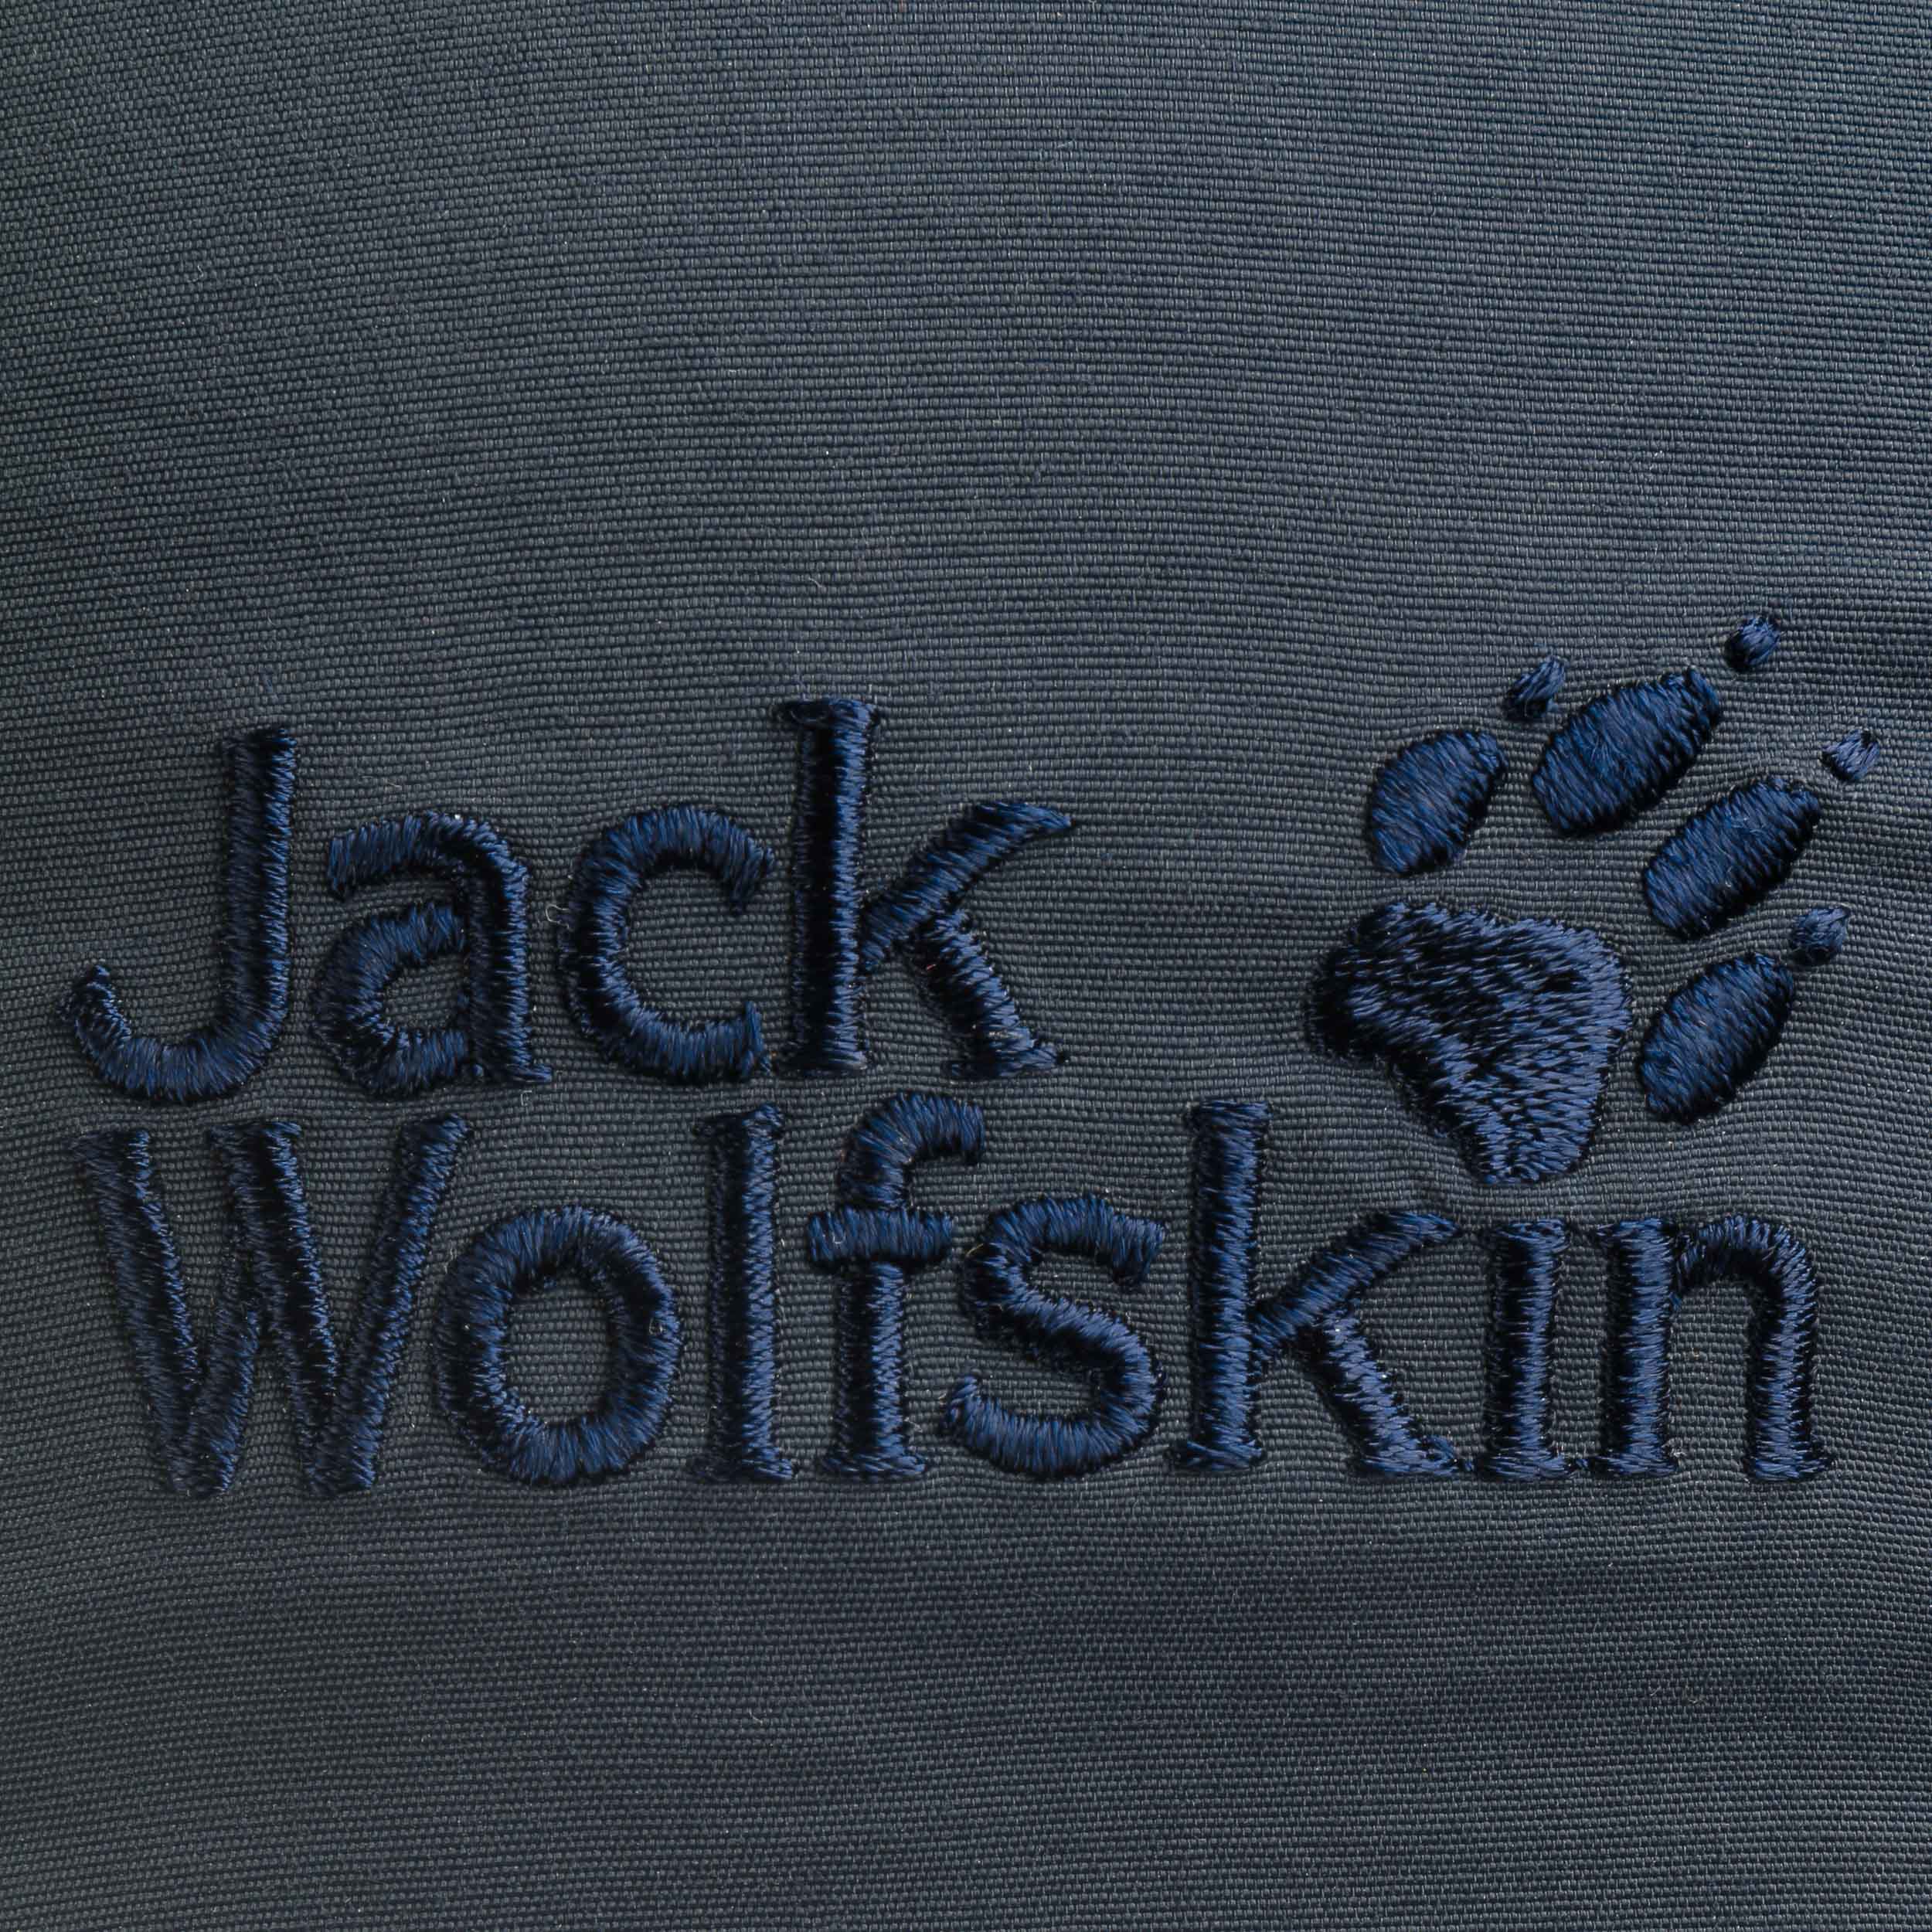 Supplex Vent - 32,95 Pro Wolfskin € Cap by Jack